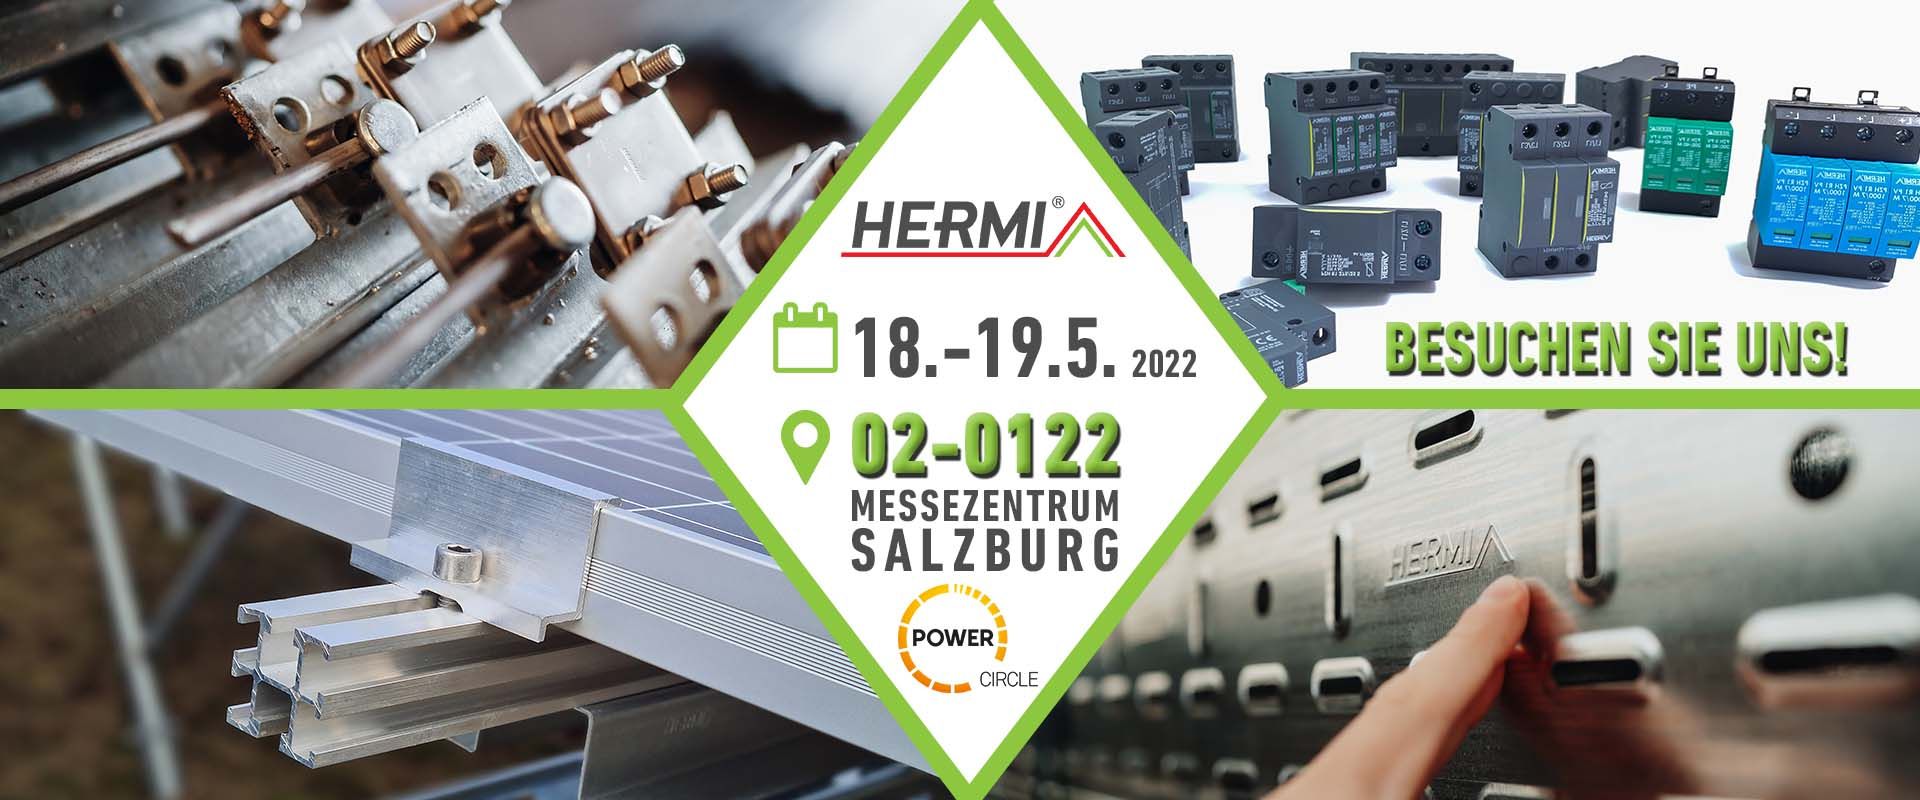 Hermi-Lösungen auf der Messe Power Circle, Salzburg